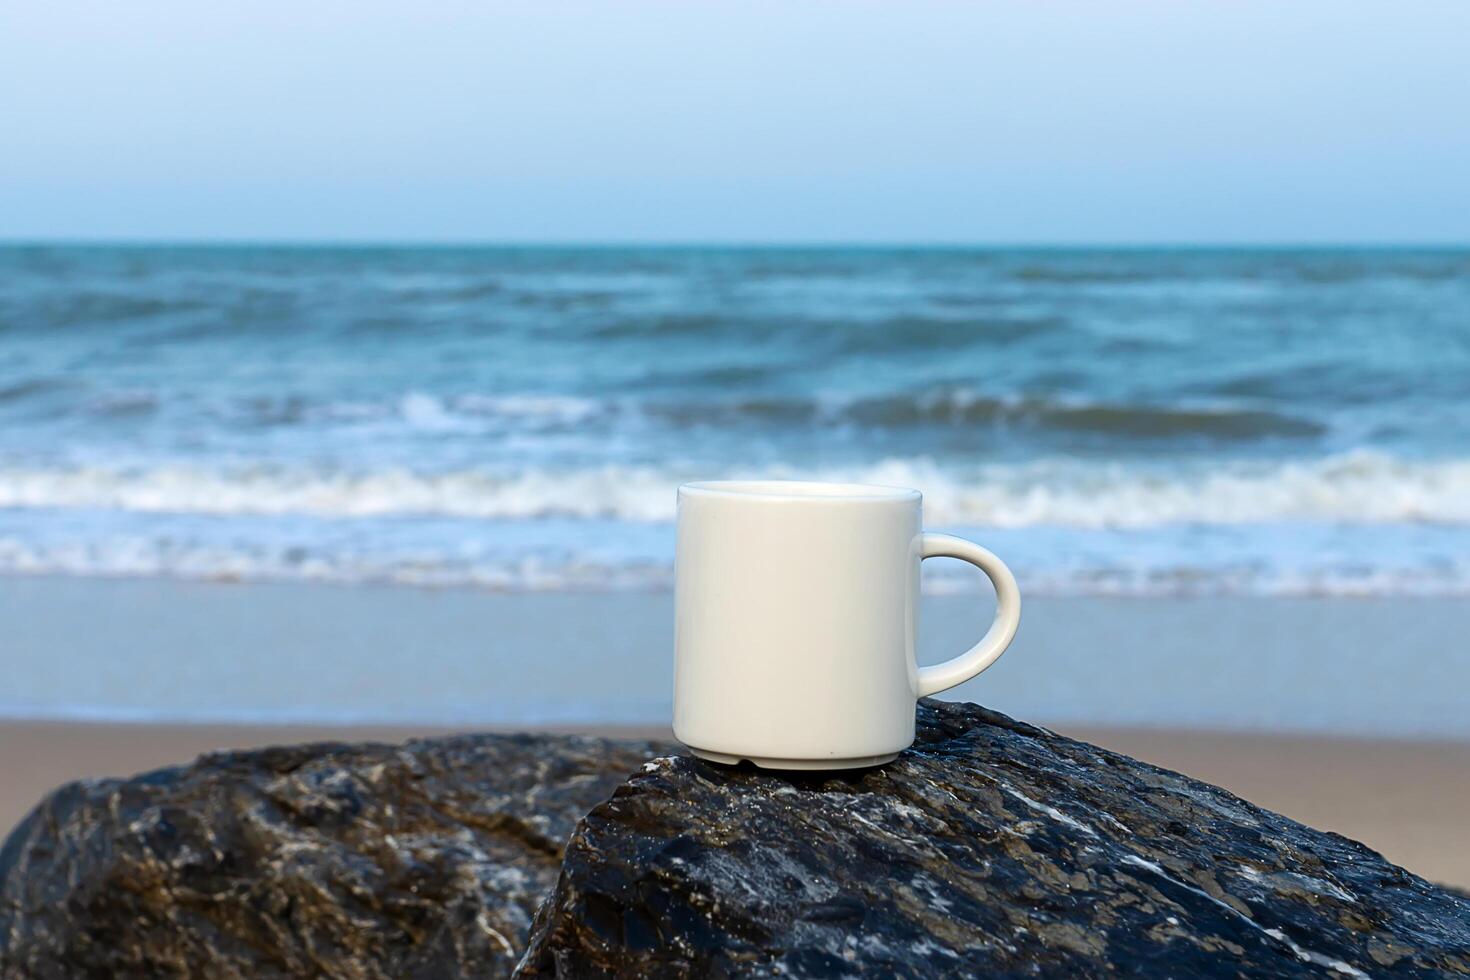 bianca caffè tazza su il roccia a mare. foto